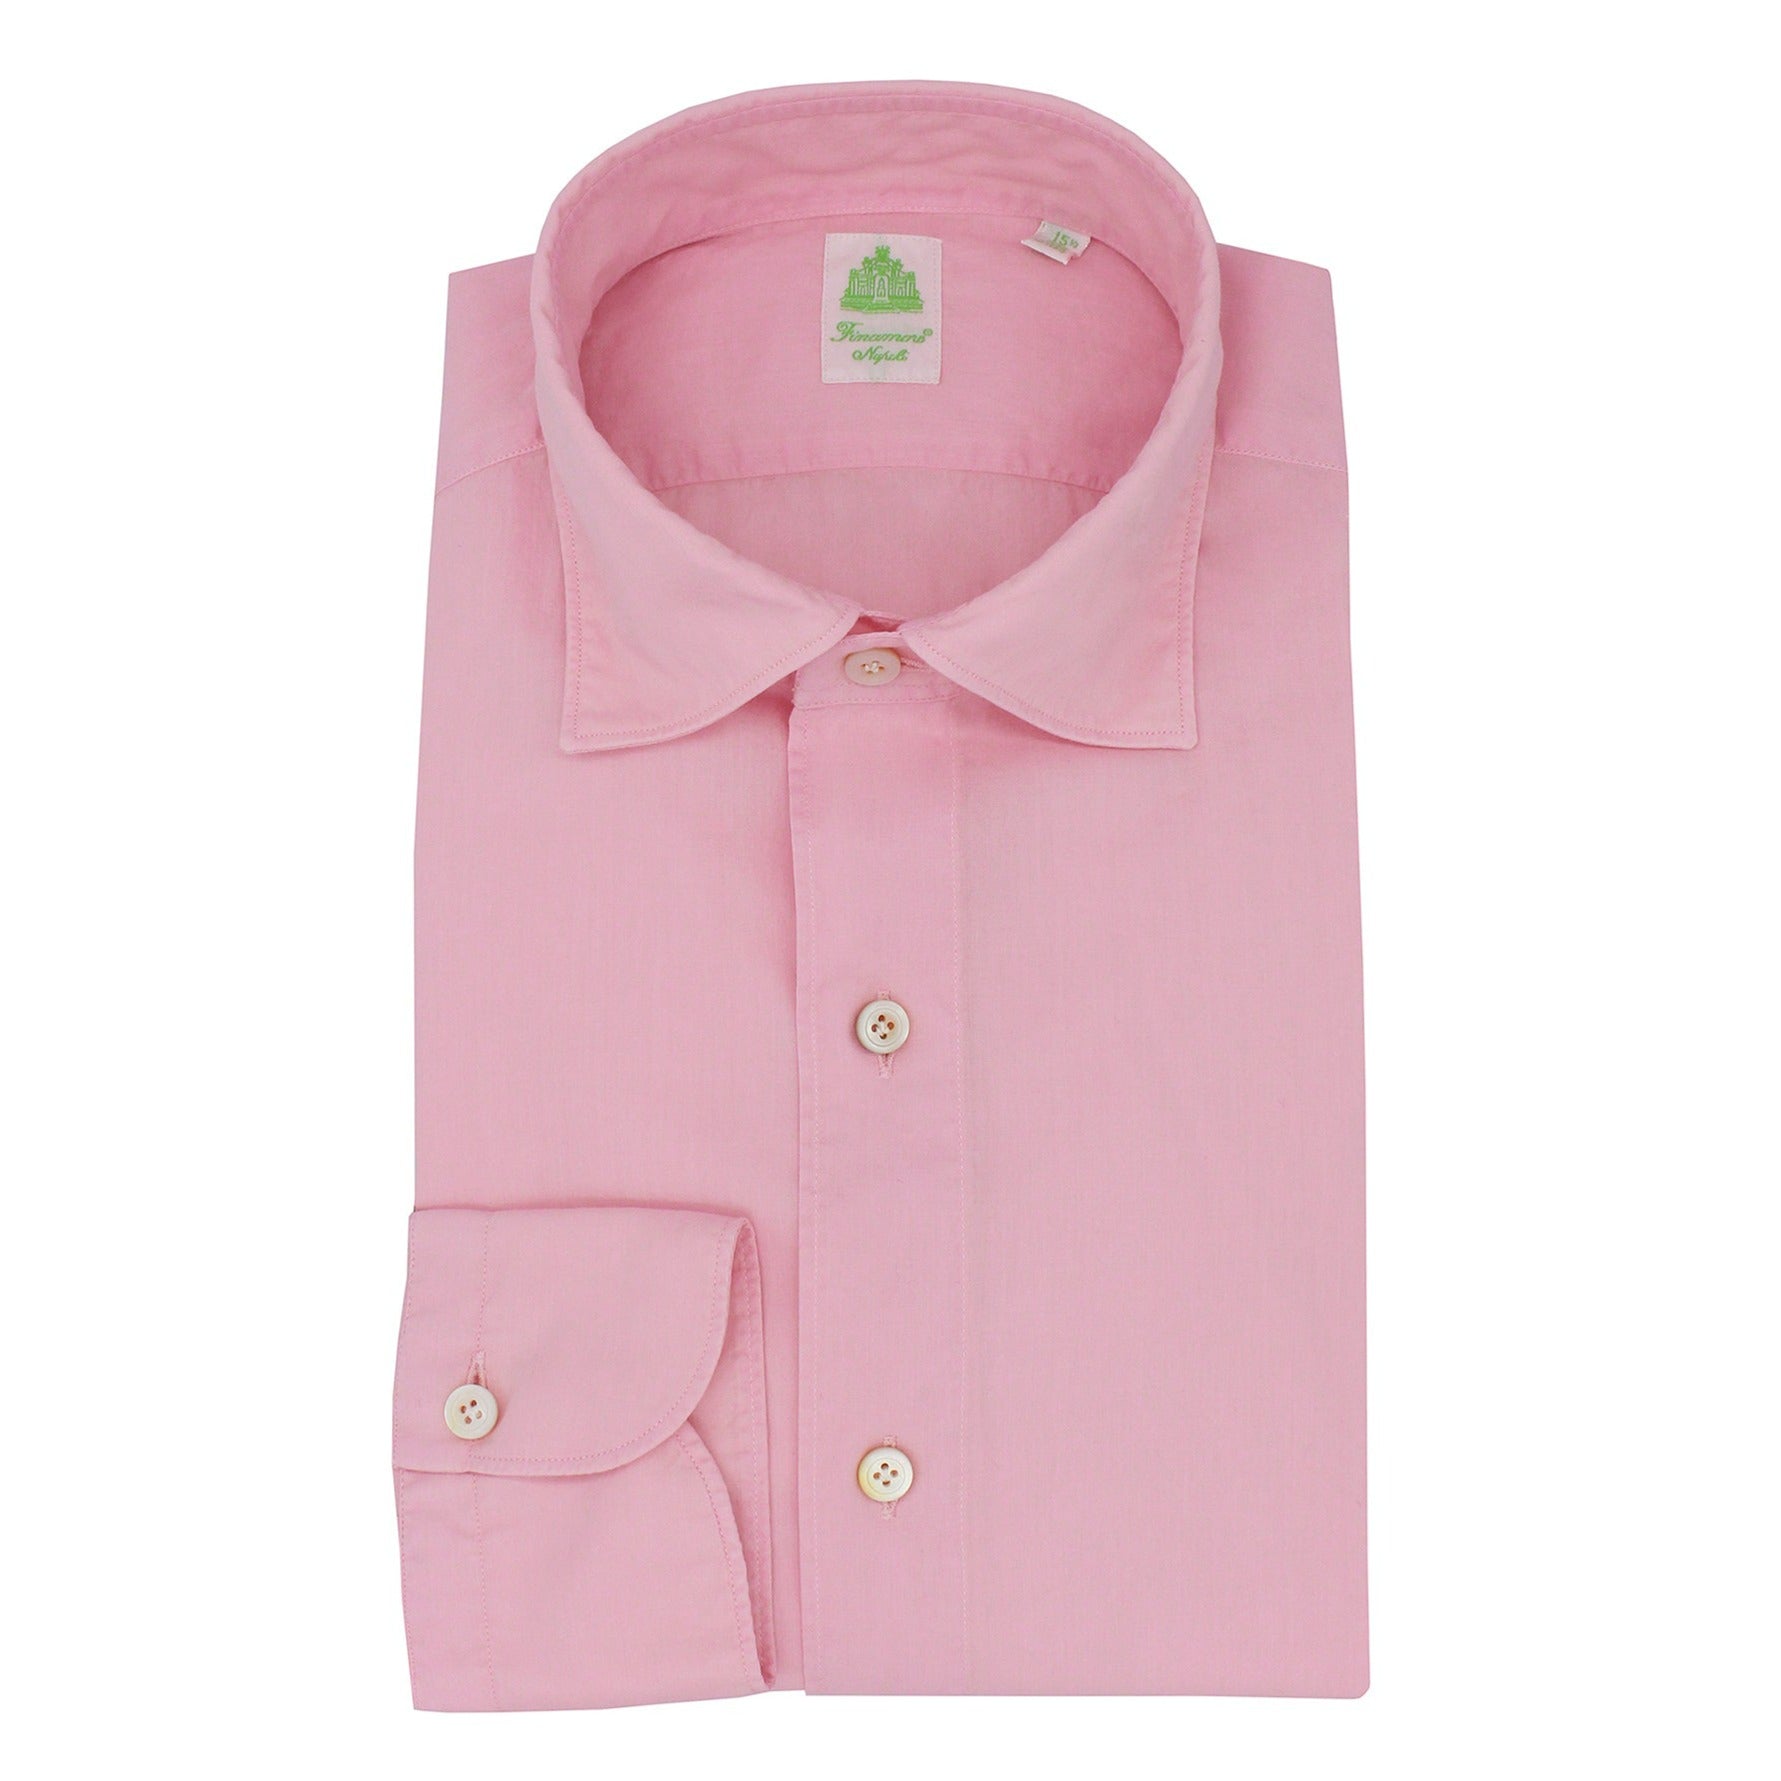 Tokio shirt slim fit cotton garment dyed pink